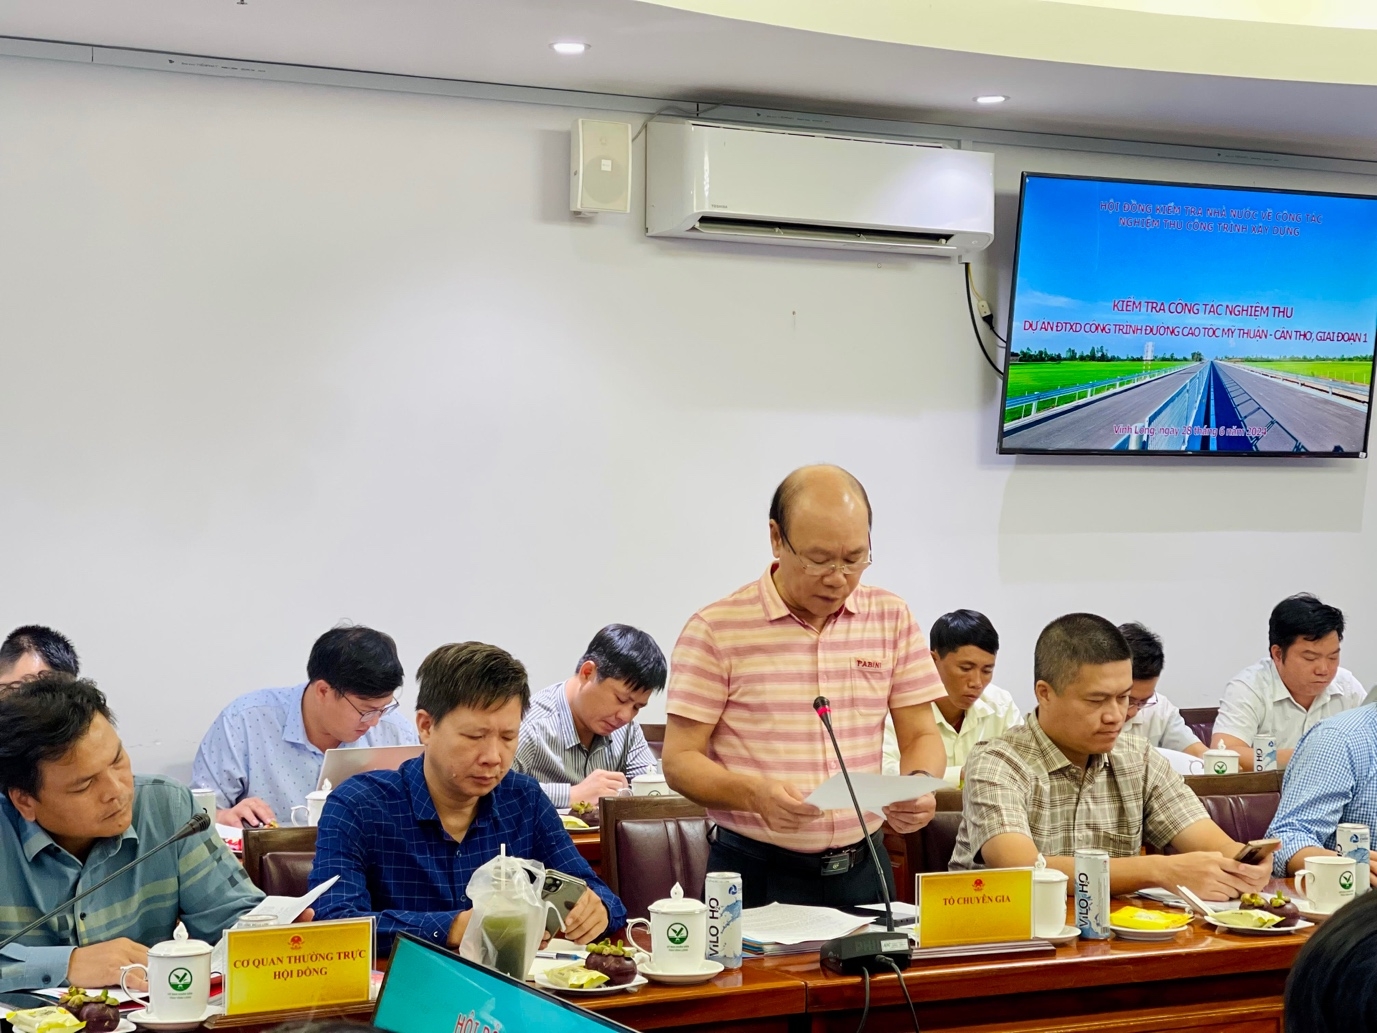 Chấp thuận kết quả nghiệm thu tuyến chính dự án cao tốc Mỹ Thuận – Cần Thơ để đưa vào khai thác có điều kiện